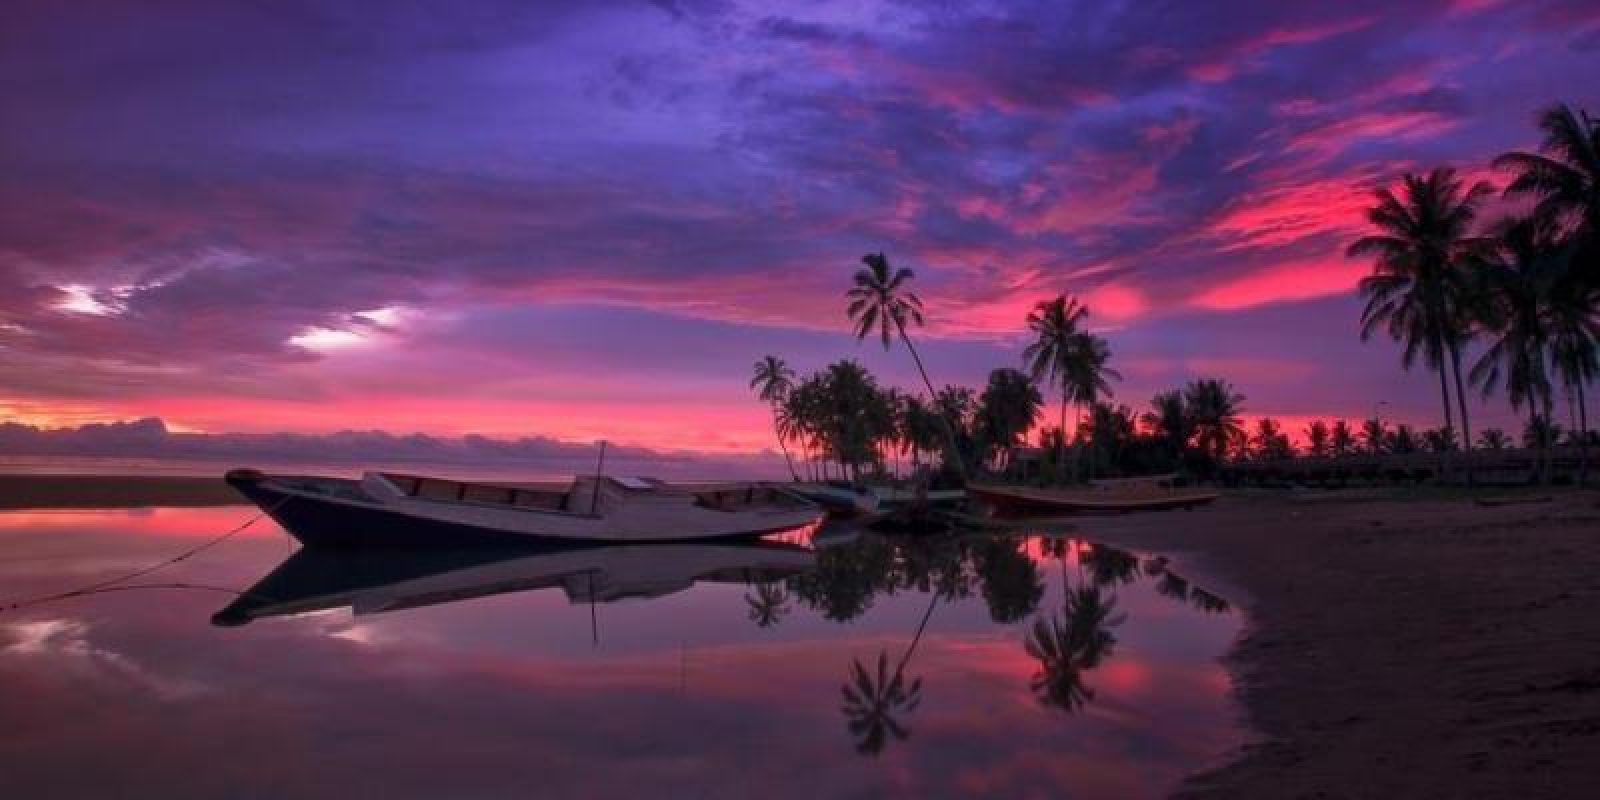 10 Wisata Pantai Di Kalimantan Selatan Yang Wajib Dikunjungi